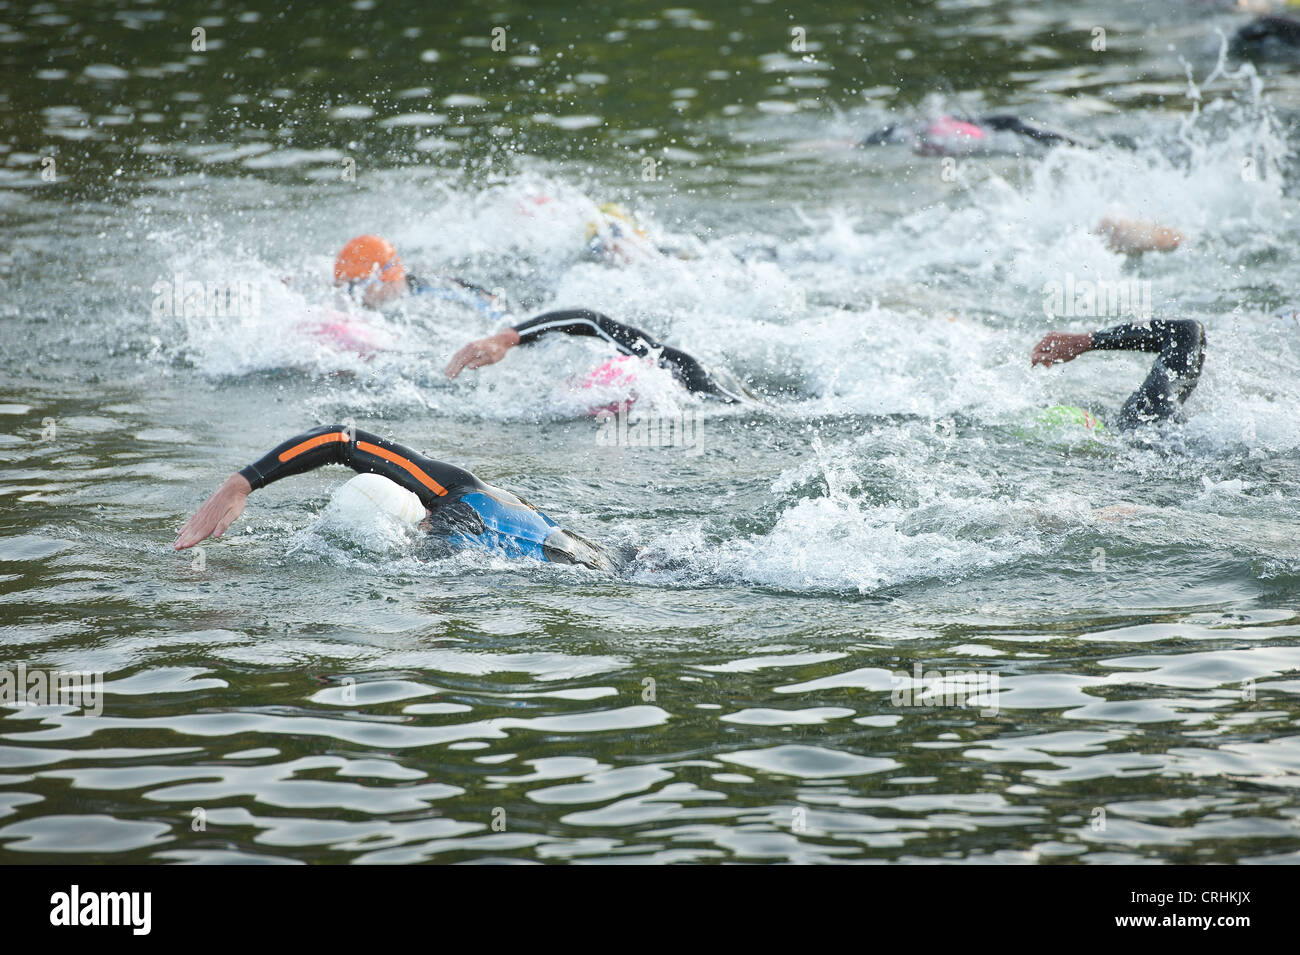 Freiwasser schwimmen, männliche und weibliche Konkurrenz zu Beginn einen Triathlon in Süßwasser tragen Wetsuits Crawl sprinten Stockfoto